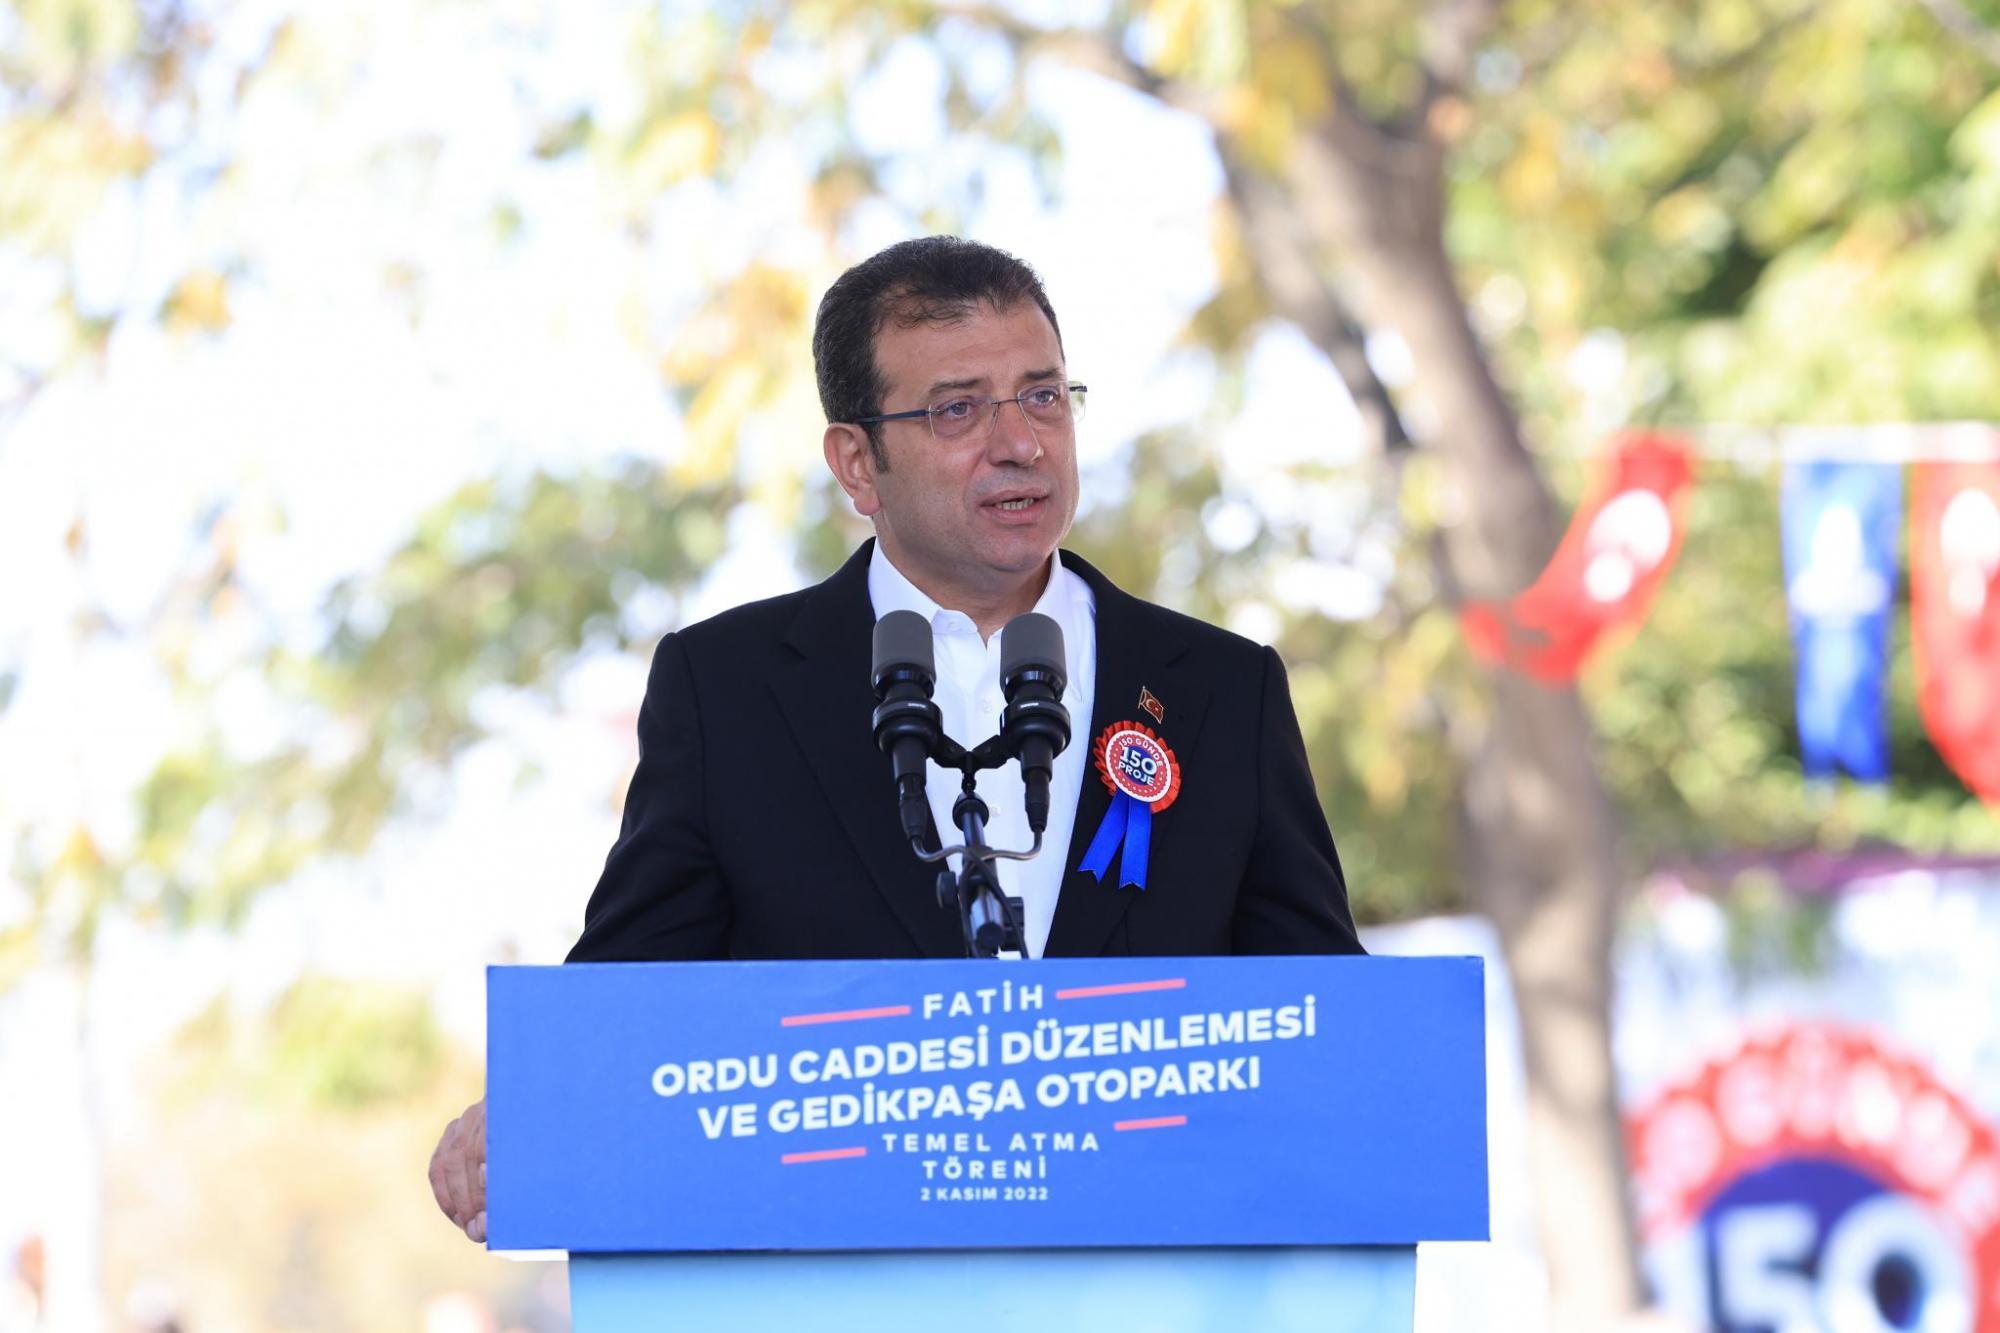 Ekrem İmamoğlu İstanbul için hedefini açıkladı: "Cumhuriyet’imizin ikinci yüzyılında..."